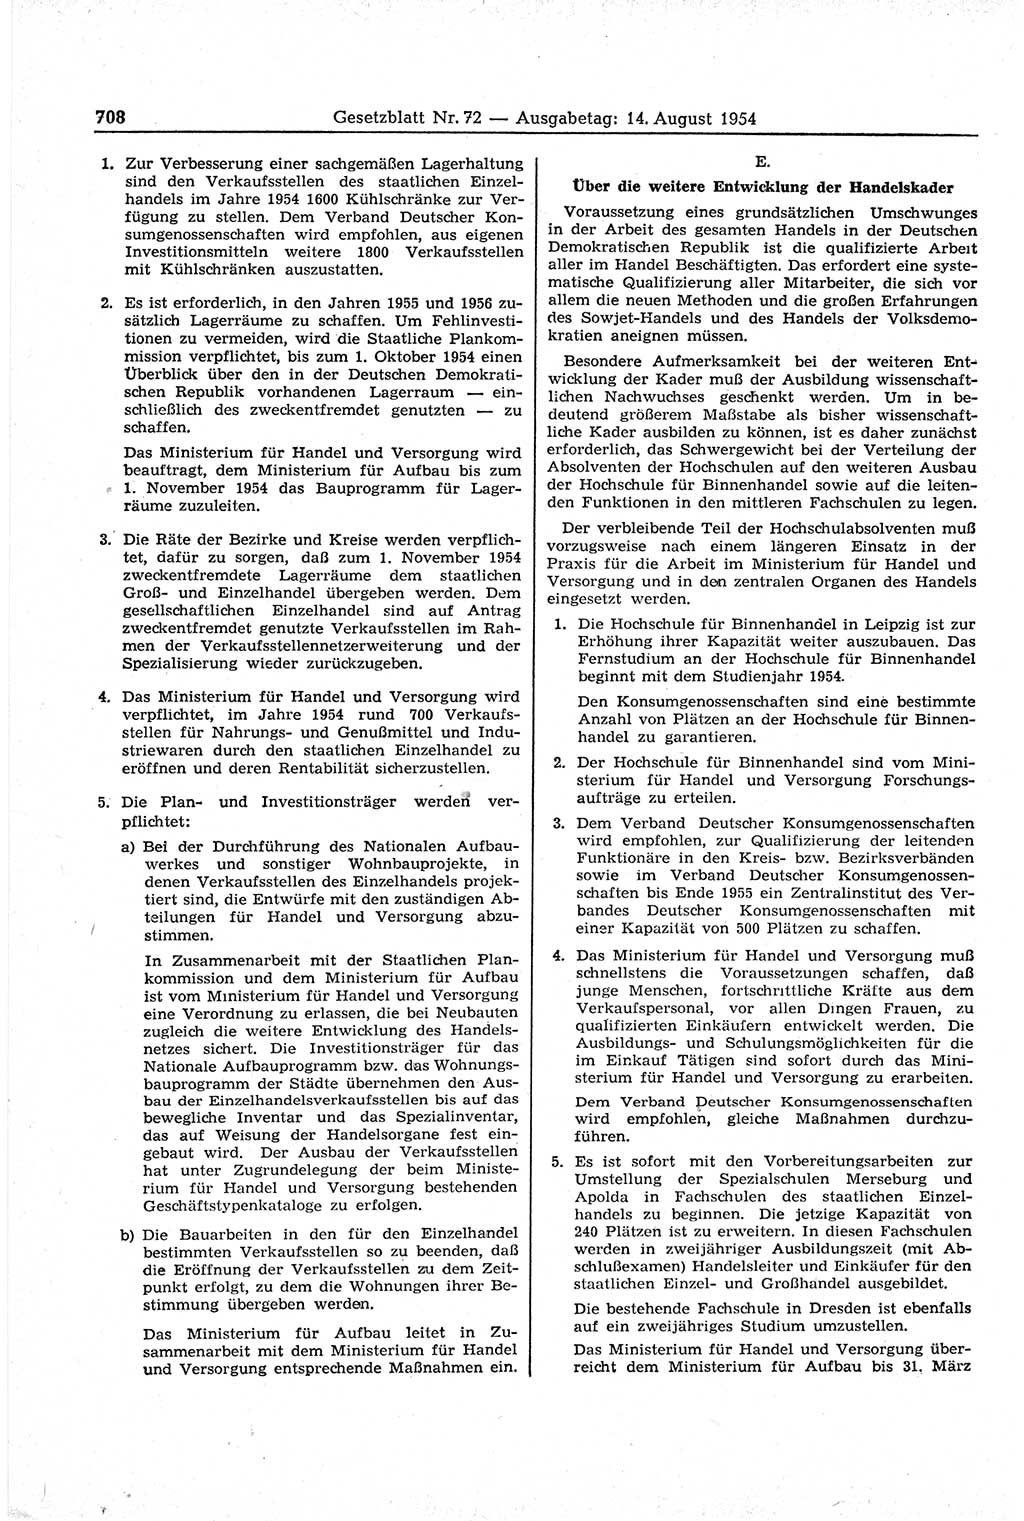 Gesetzblatt (GBl.) der Deutschen Demokratischen Republik (DDR) 1954, Seite 708 (GBl. DDR 1954, S. 708)